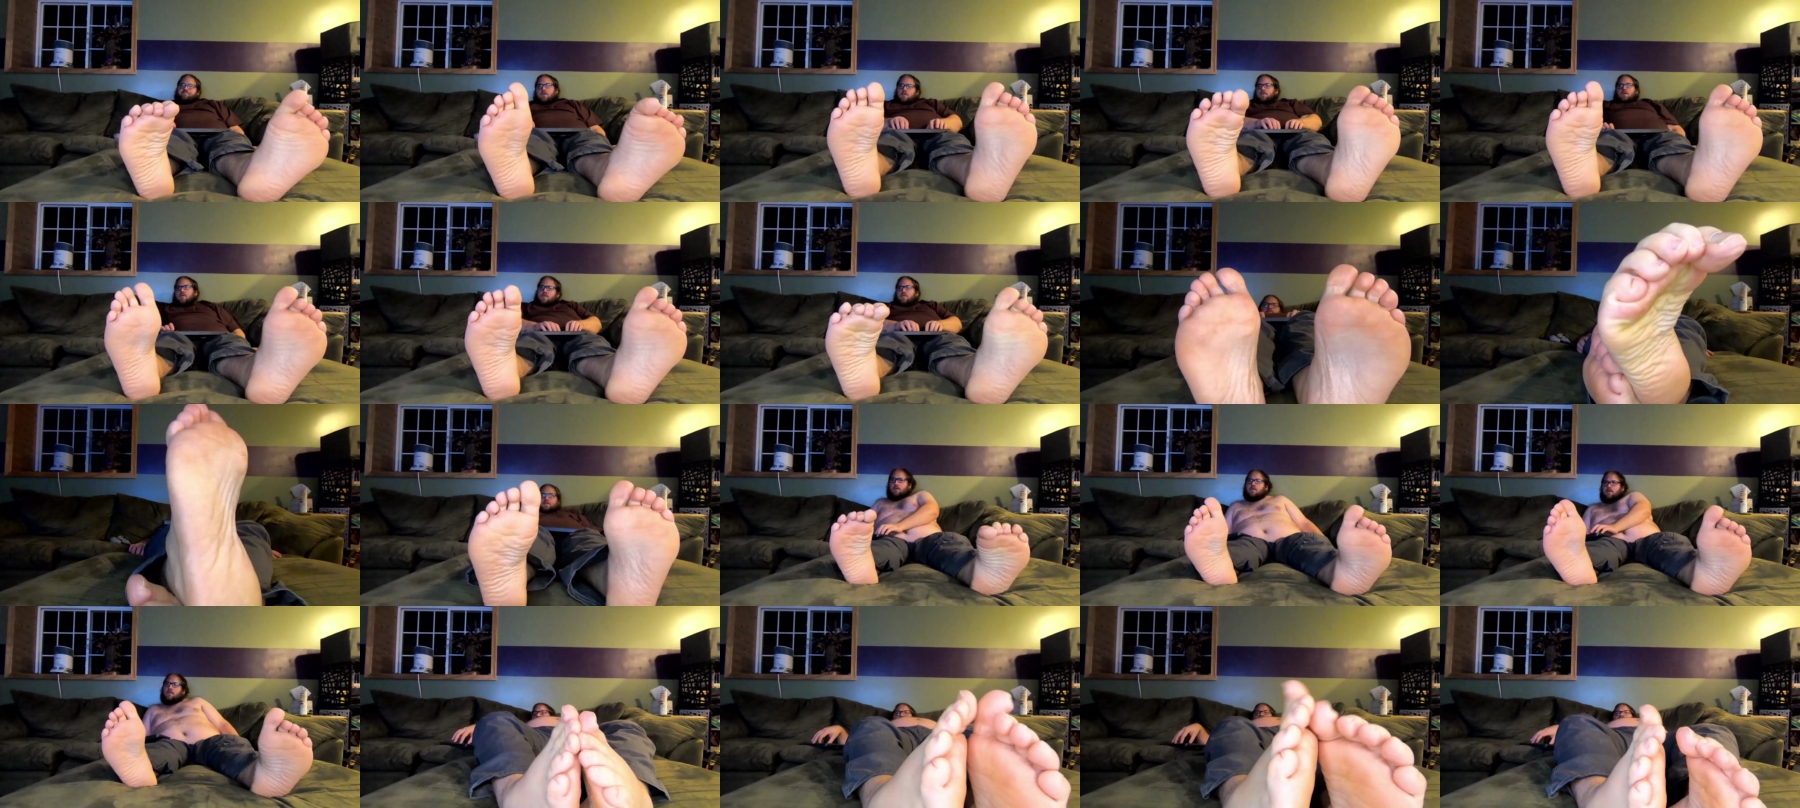 Chaturbate feet cams